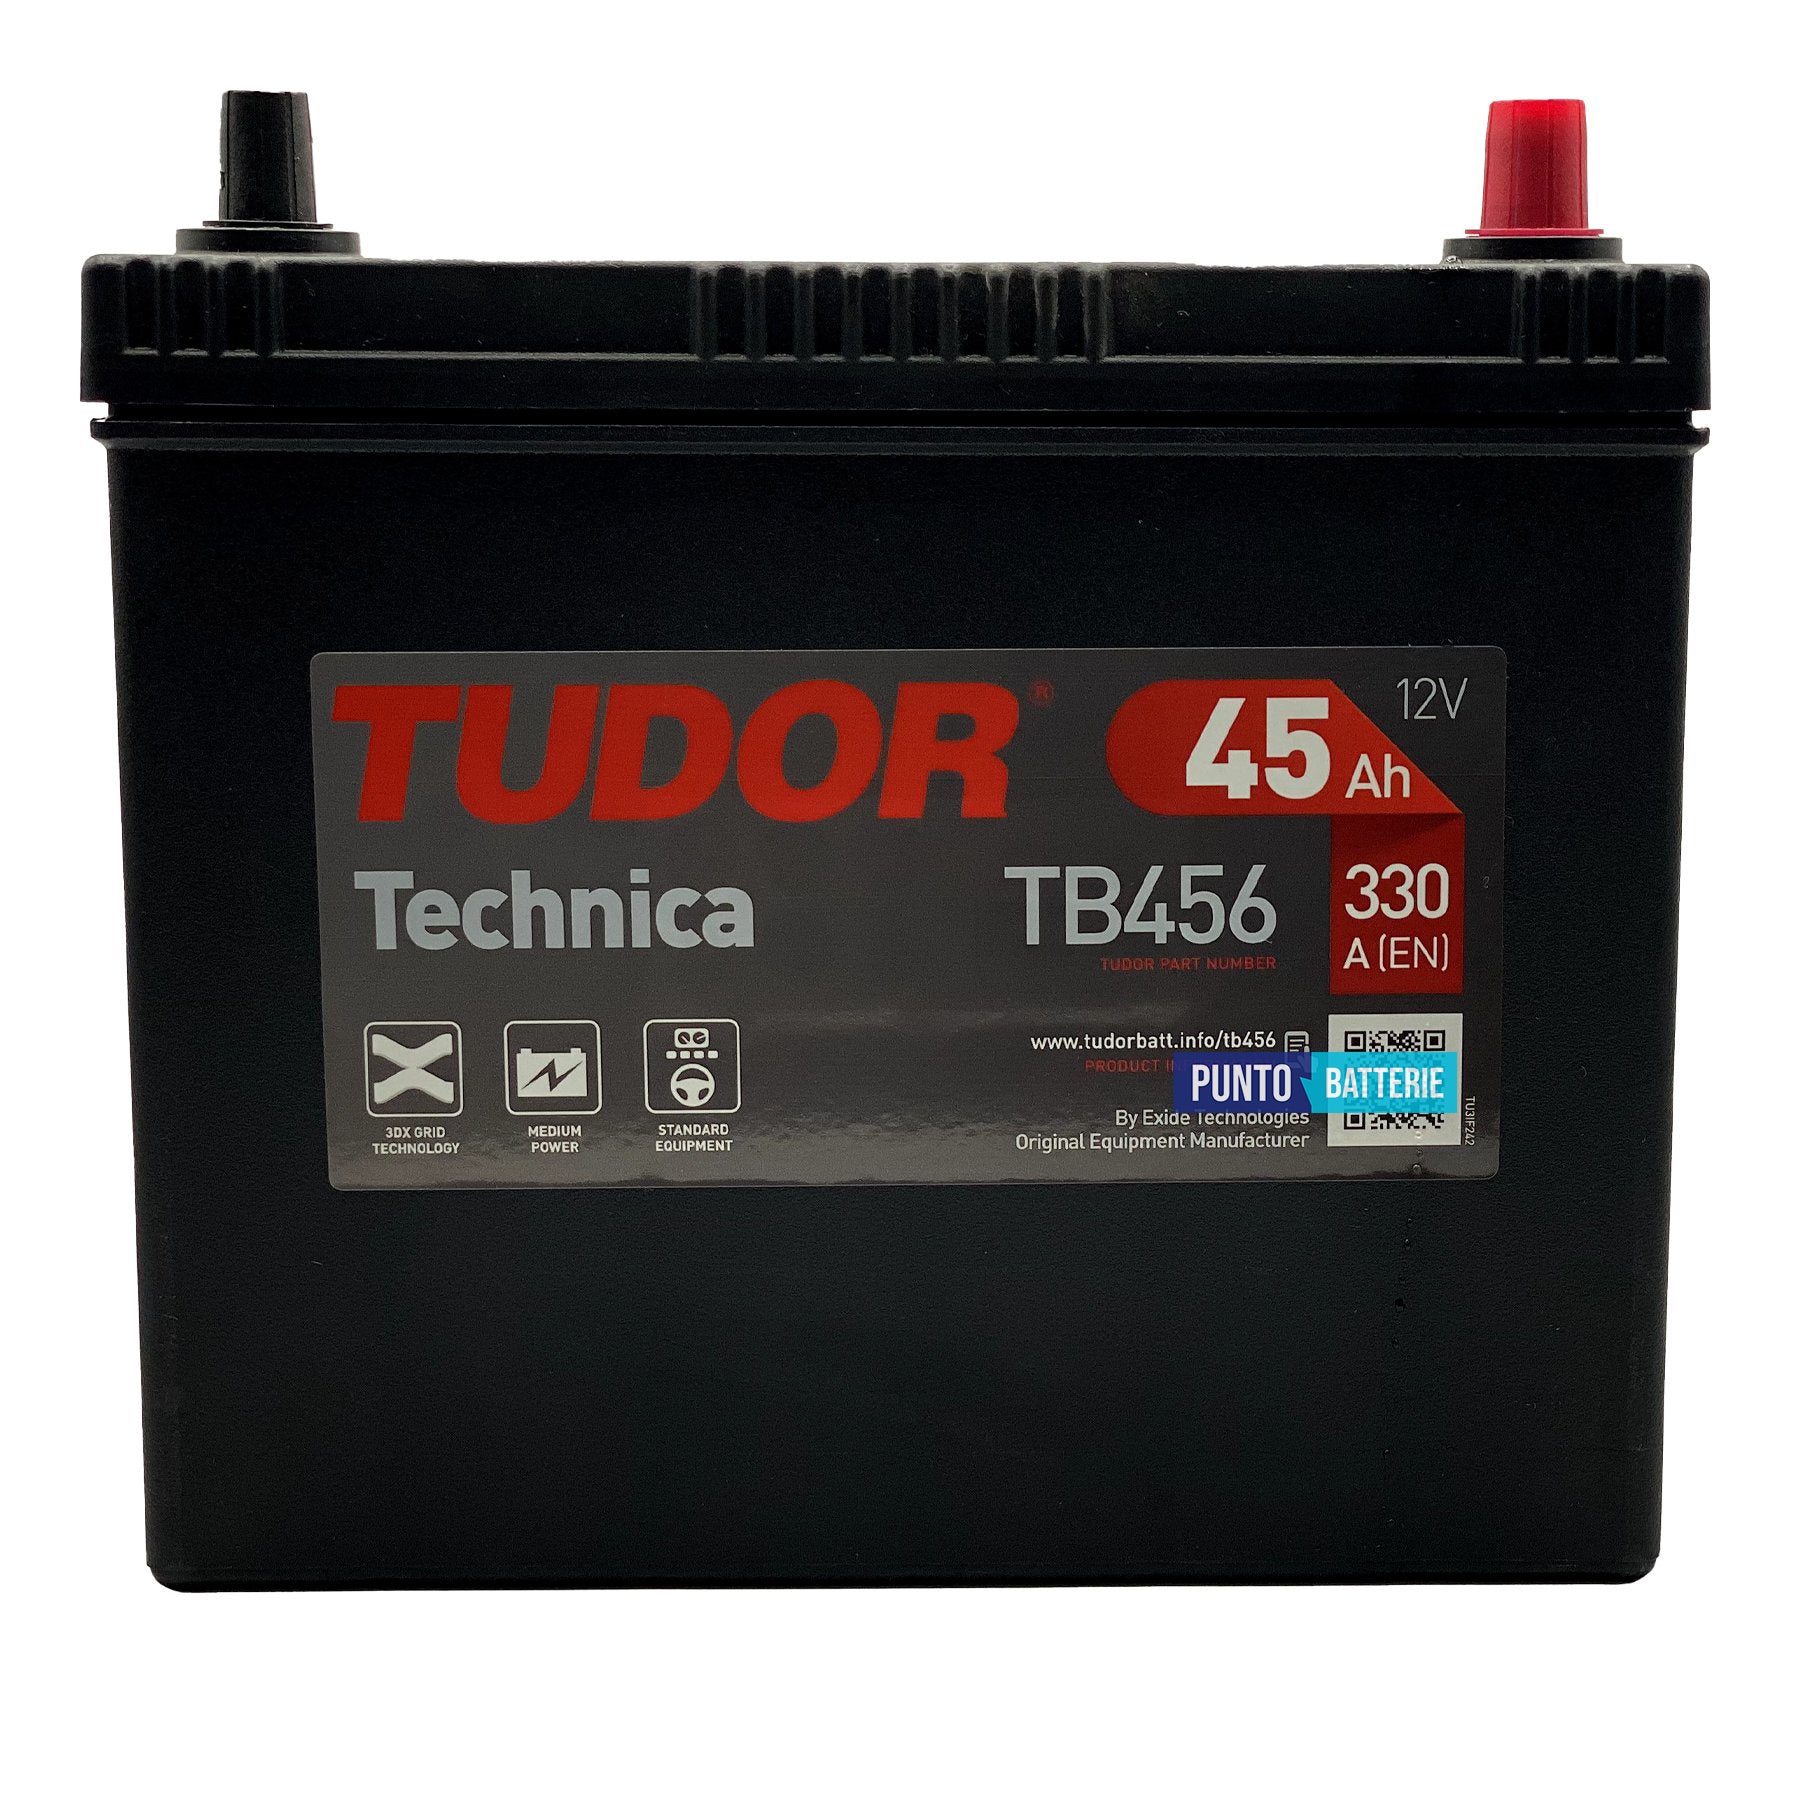 Batteria Tudor 45Ah, 12V, 330A, 237x127x227mm